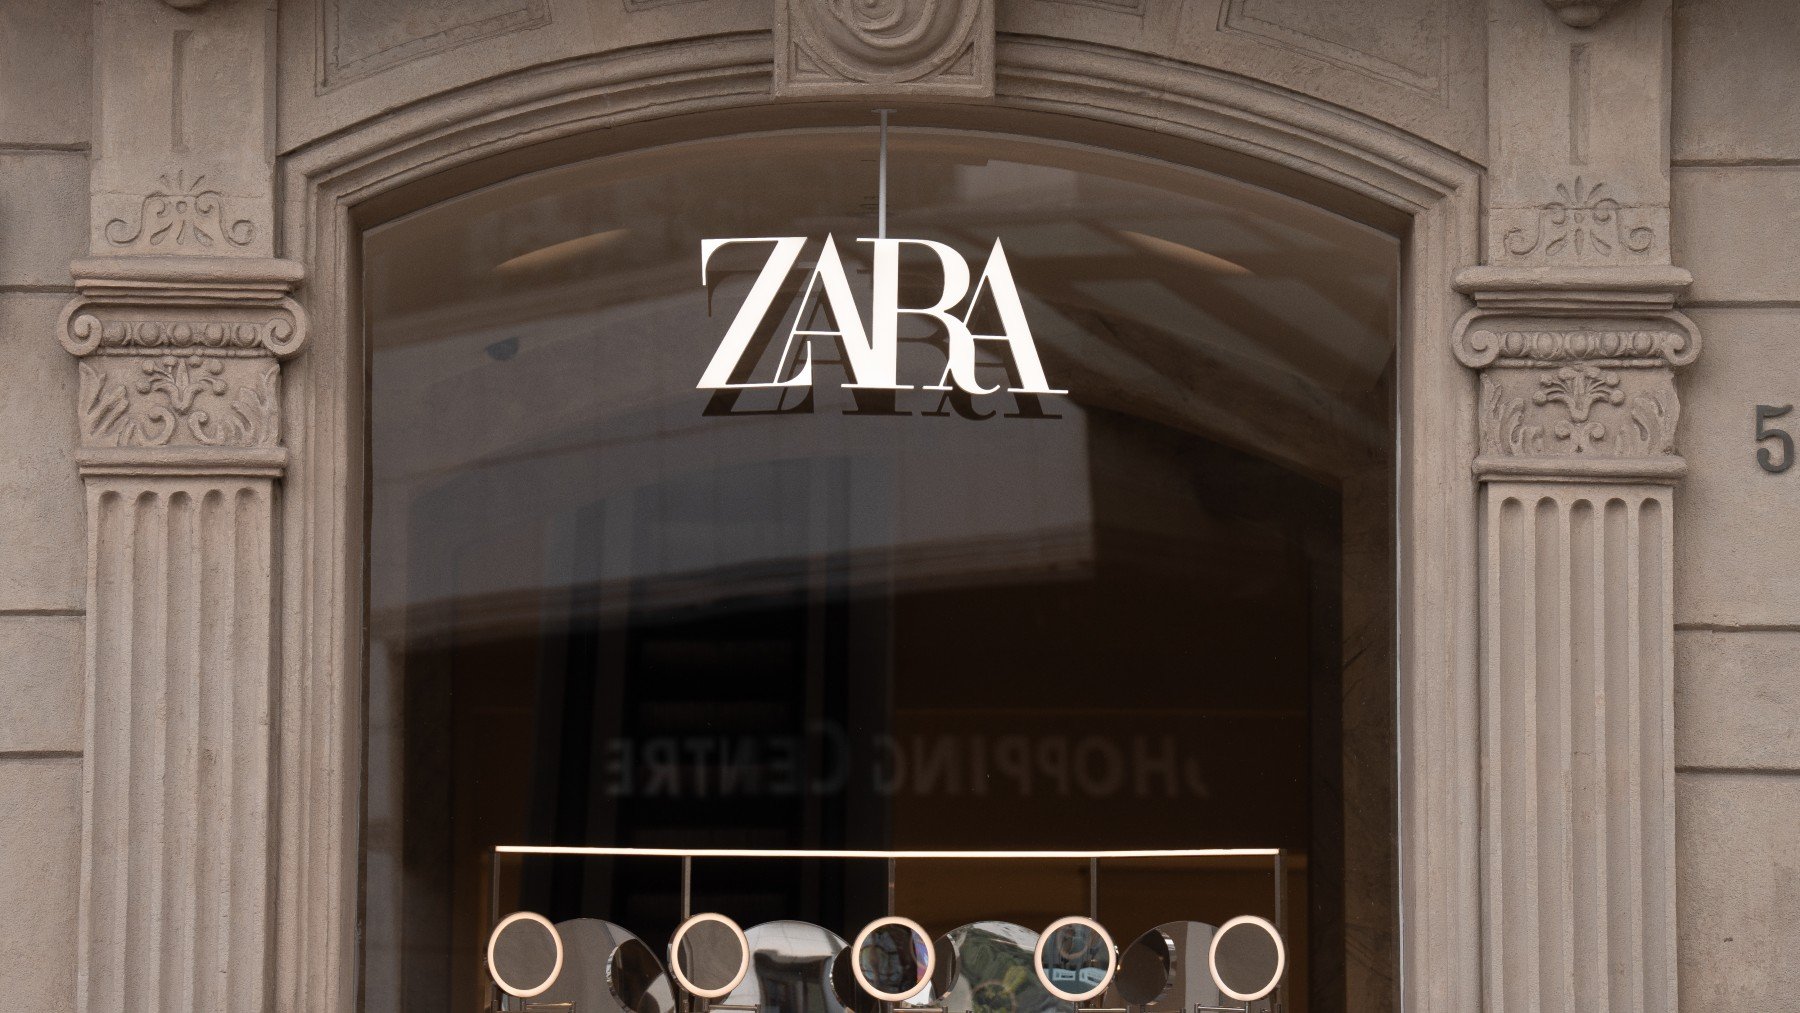 Horario de Zara y otras tiendas en España en Nochebuena y Navidad.